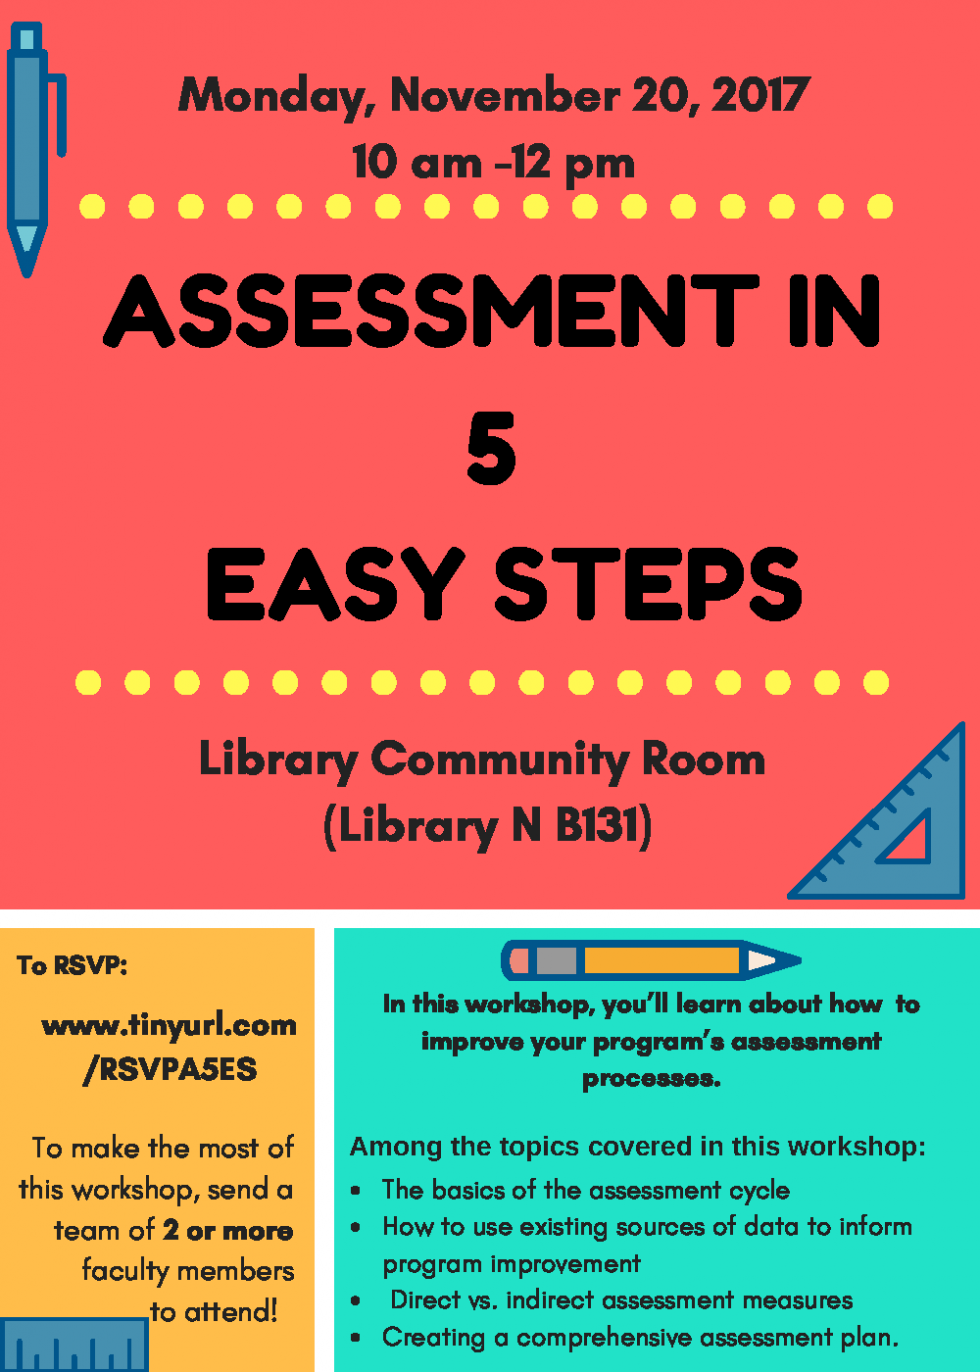 Assessment In 5 Easy Steps Workshop information